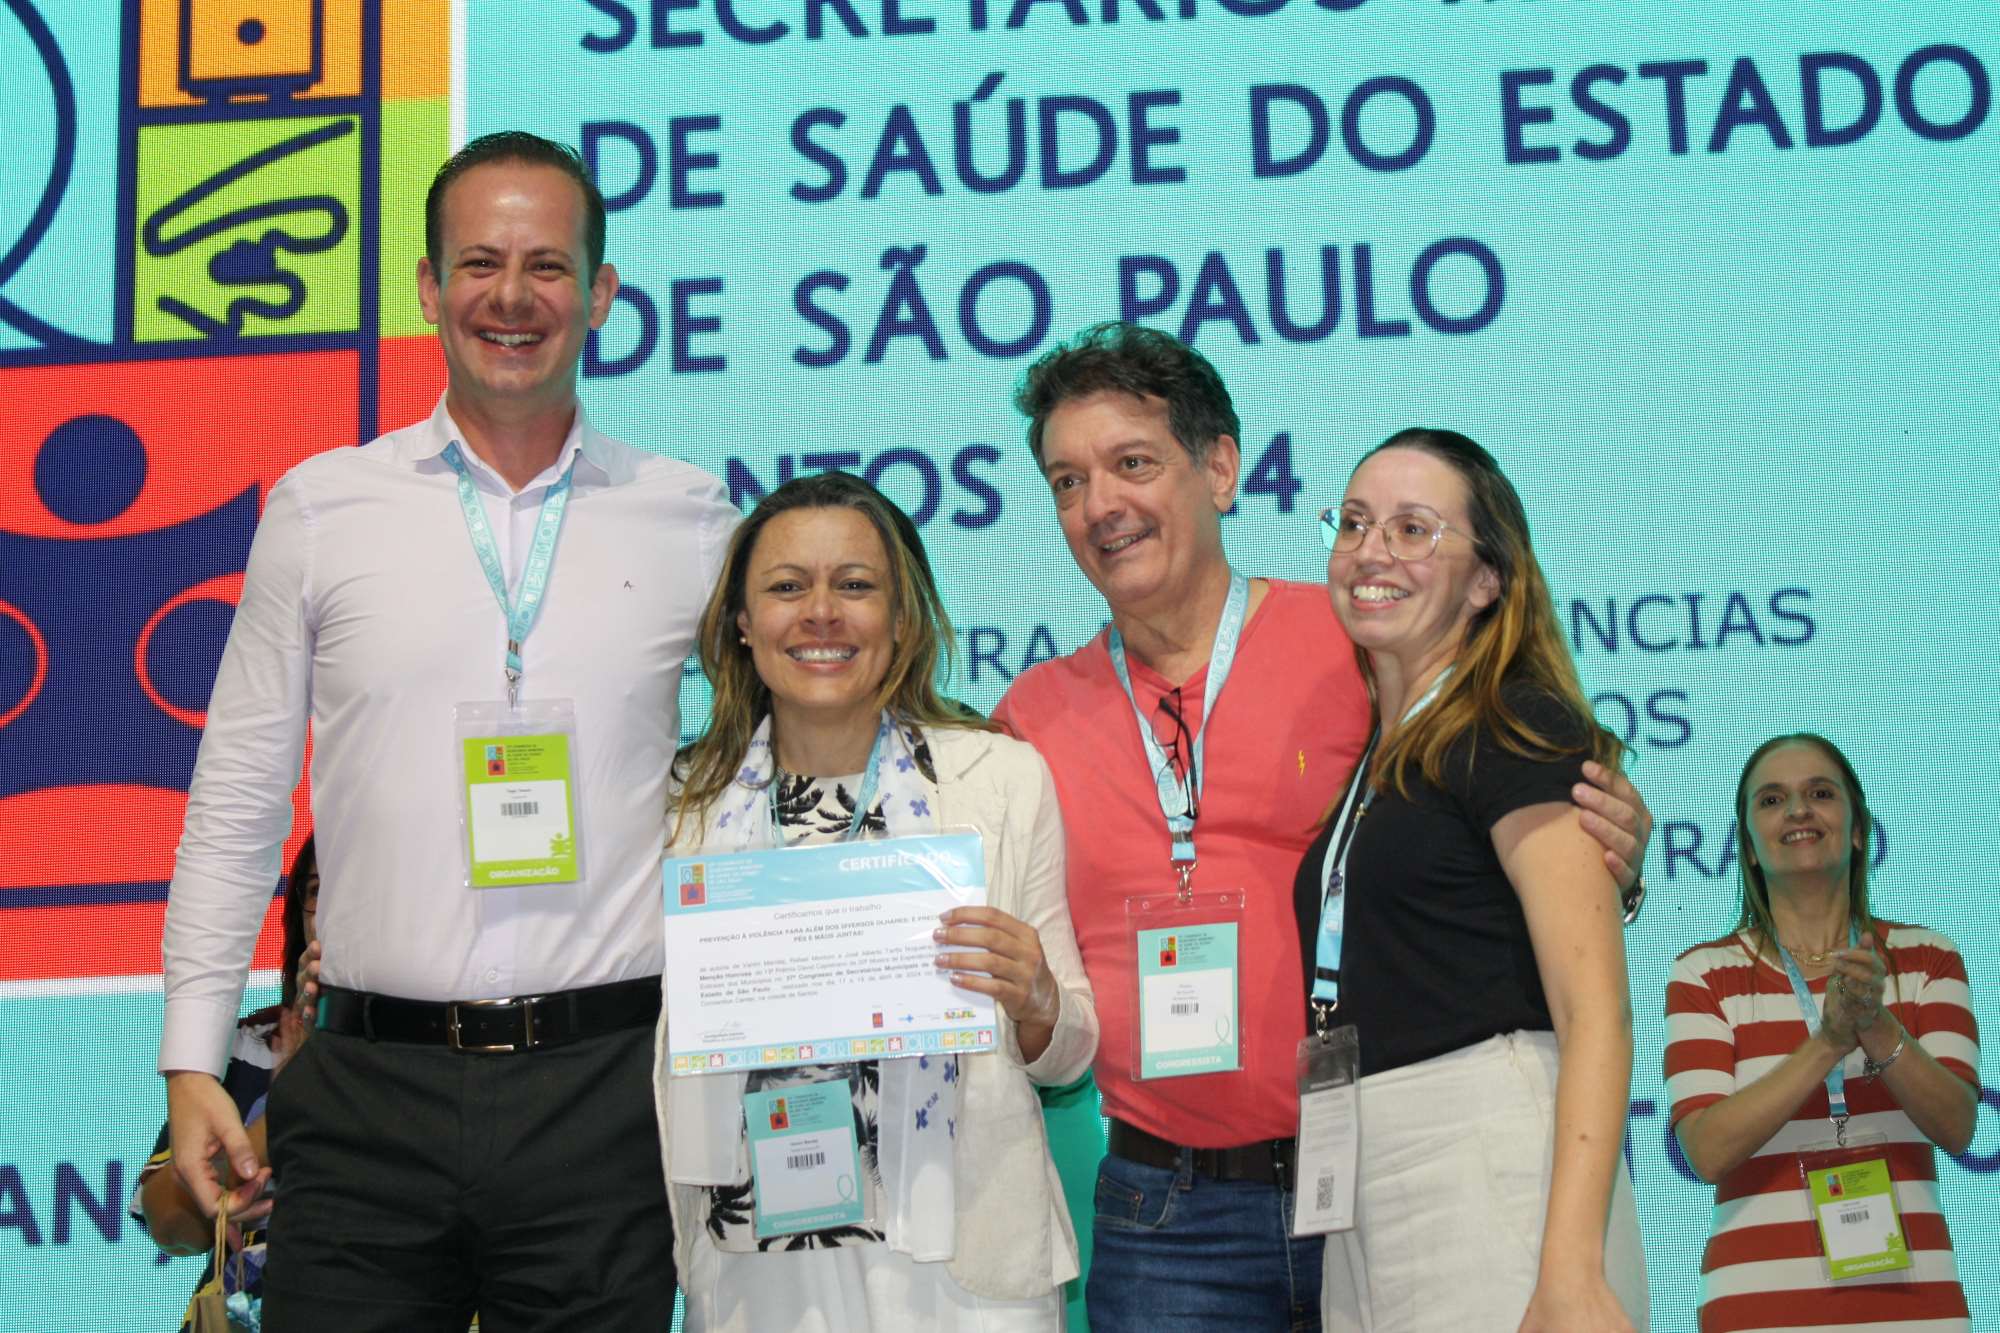 FOTO - Taboão da Serra recebe Menção Honrosa em 37º Congresso de Secretários Municipal de Saúde do Estado de São Paulo